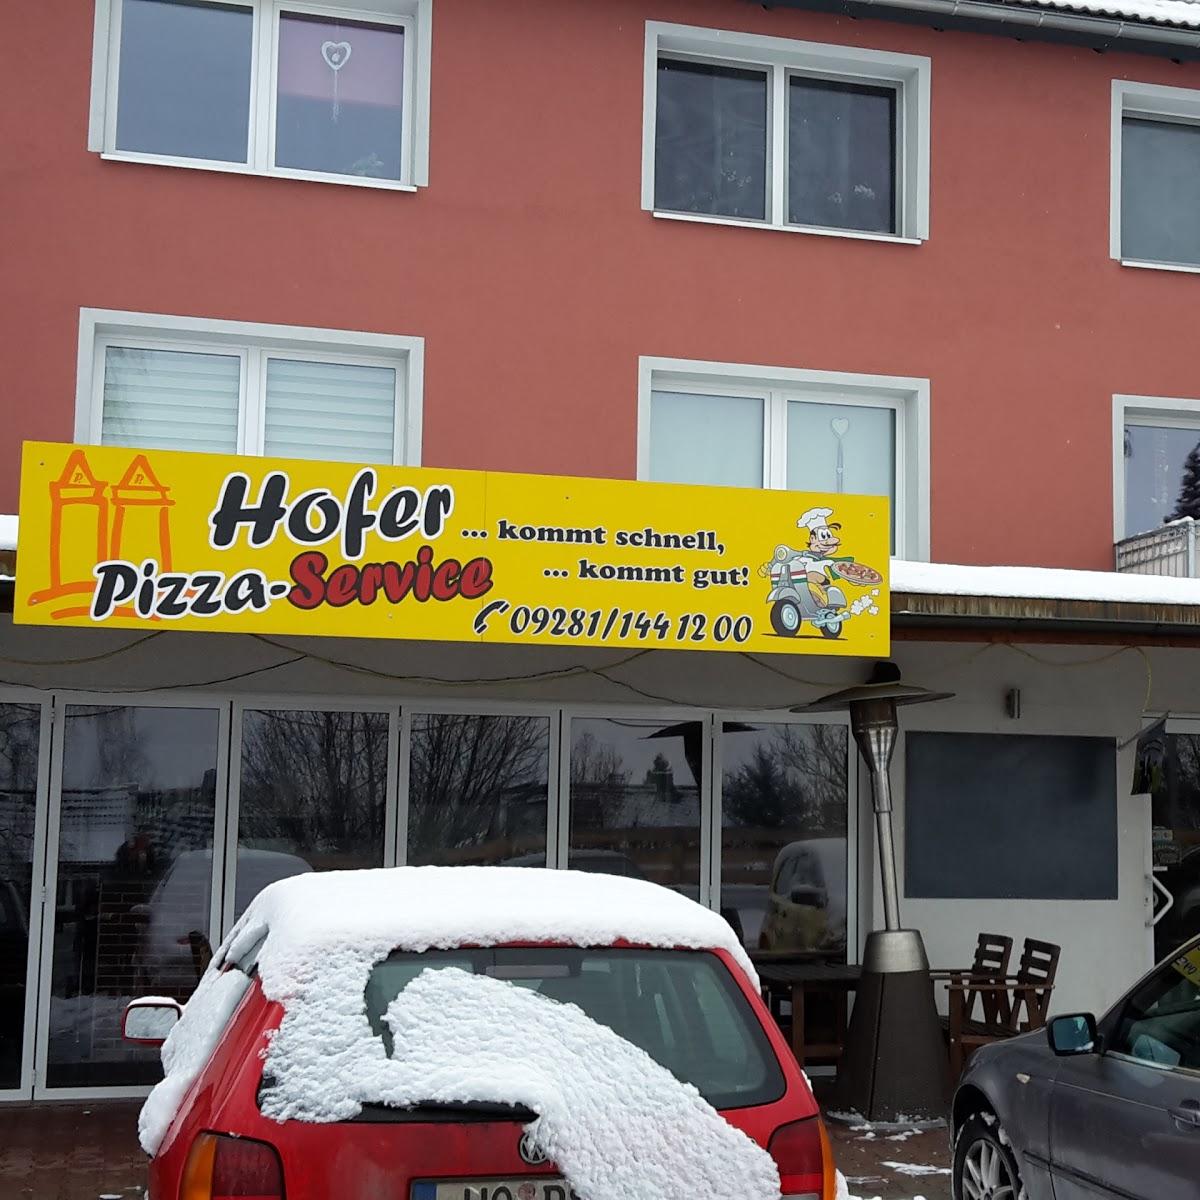 Restaurant "er Pizzaservice" in Hof